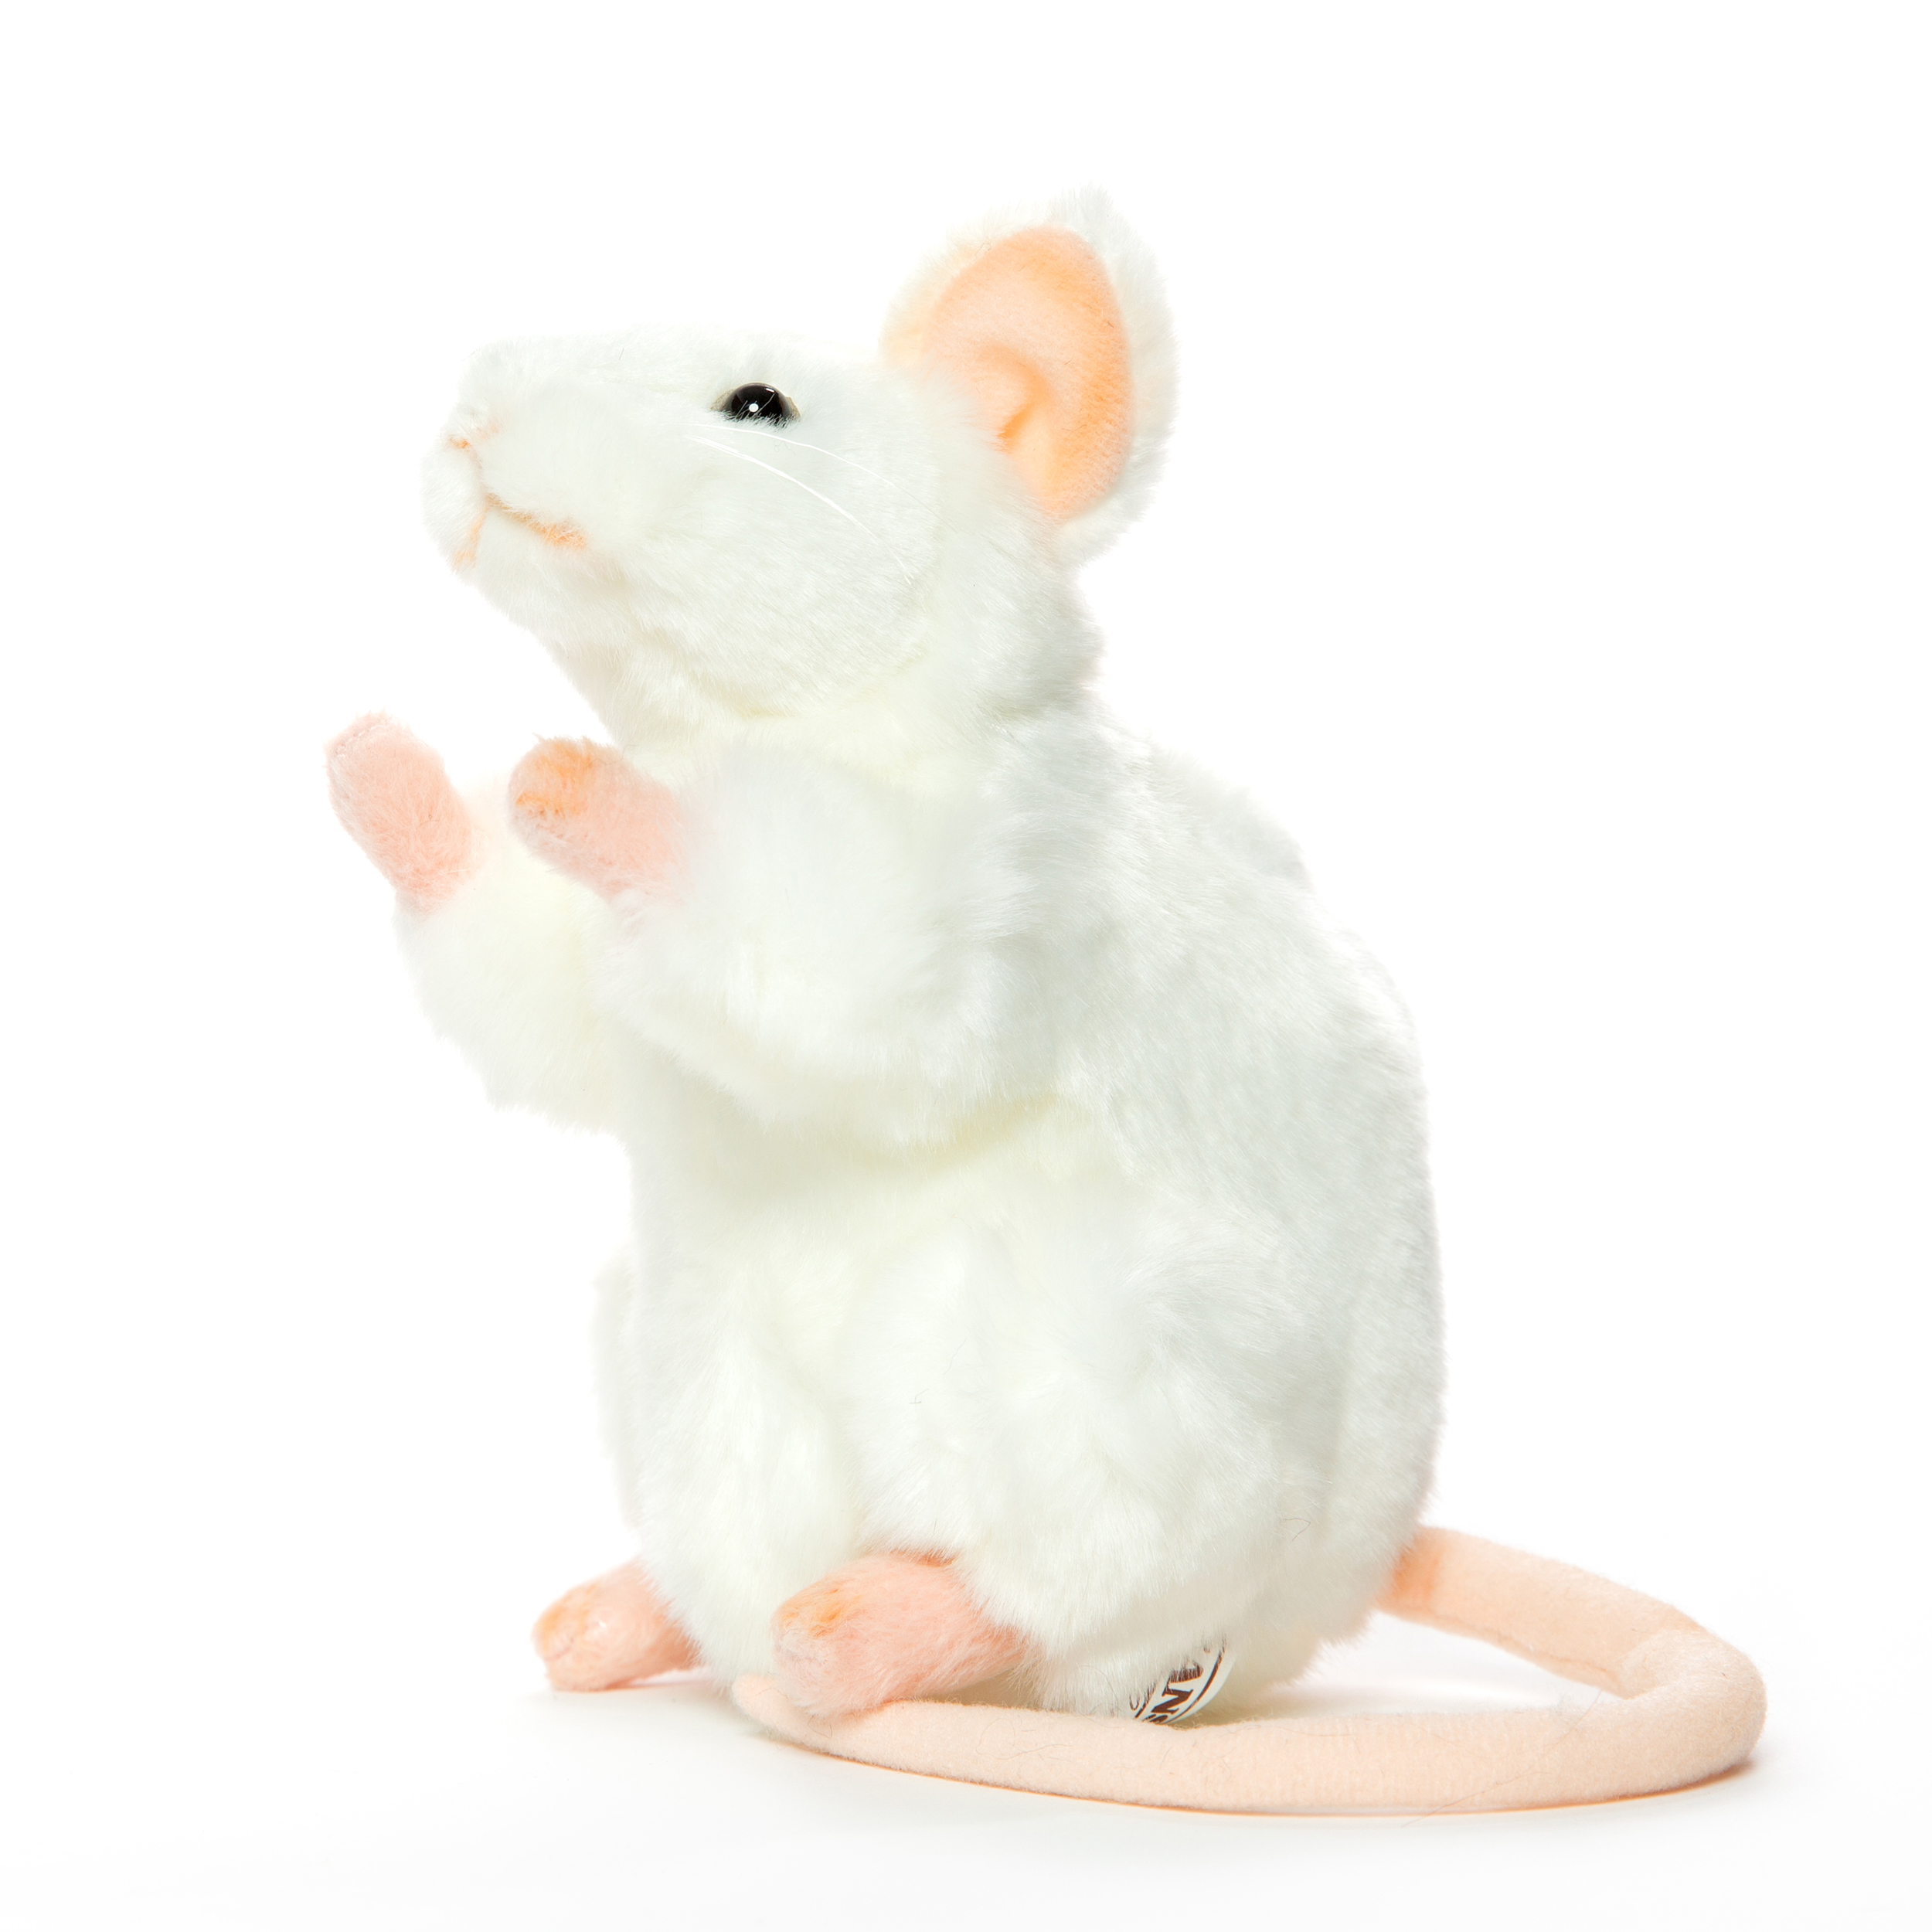 Flikkeren Afscheiden Leuk vinden Muis knuffel wit 16 cm - duurzaam geproduceerd pluchen dier